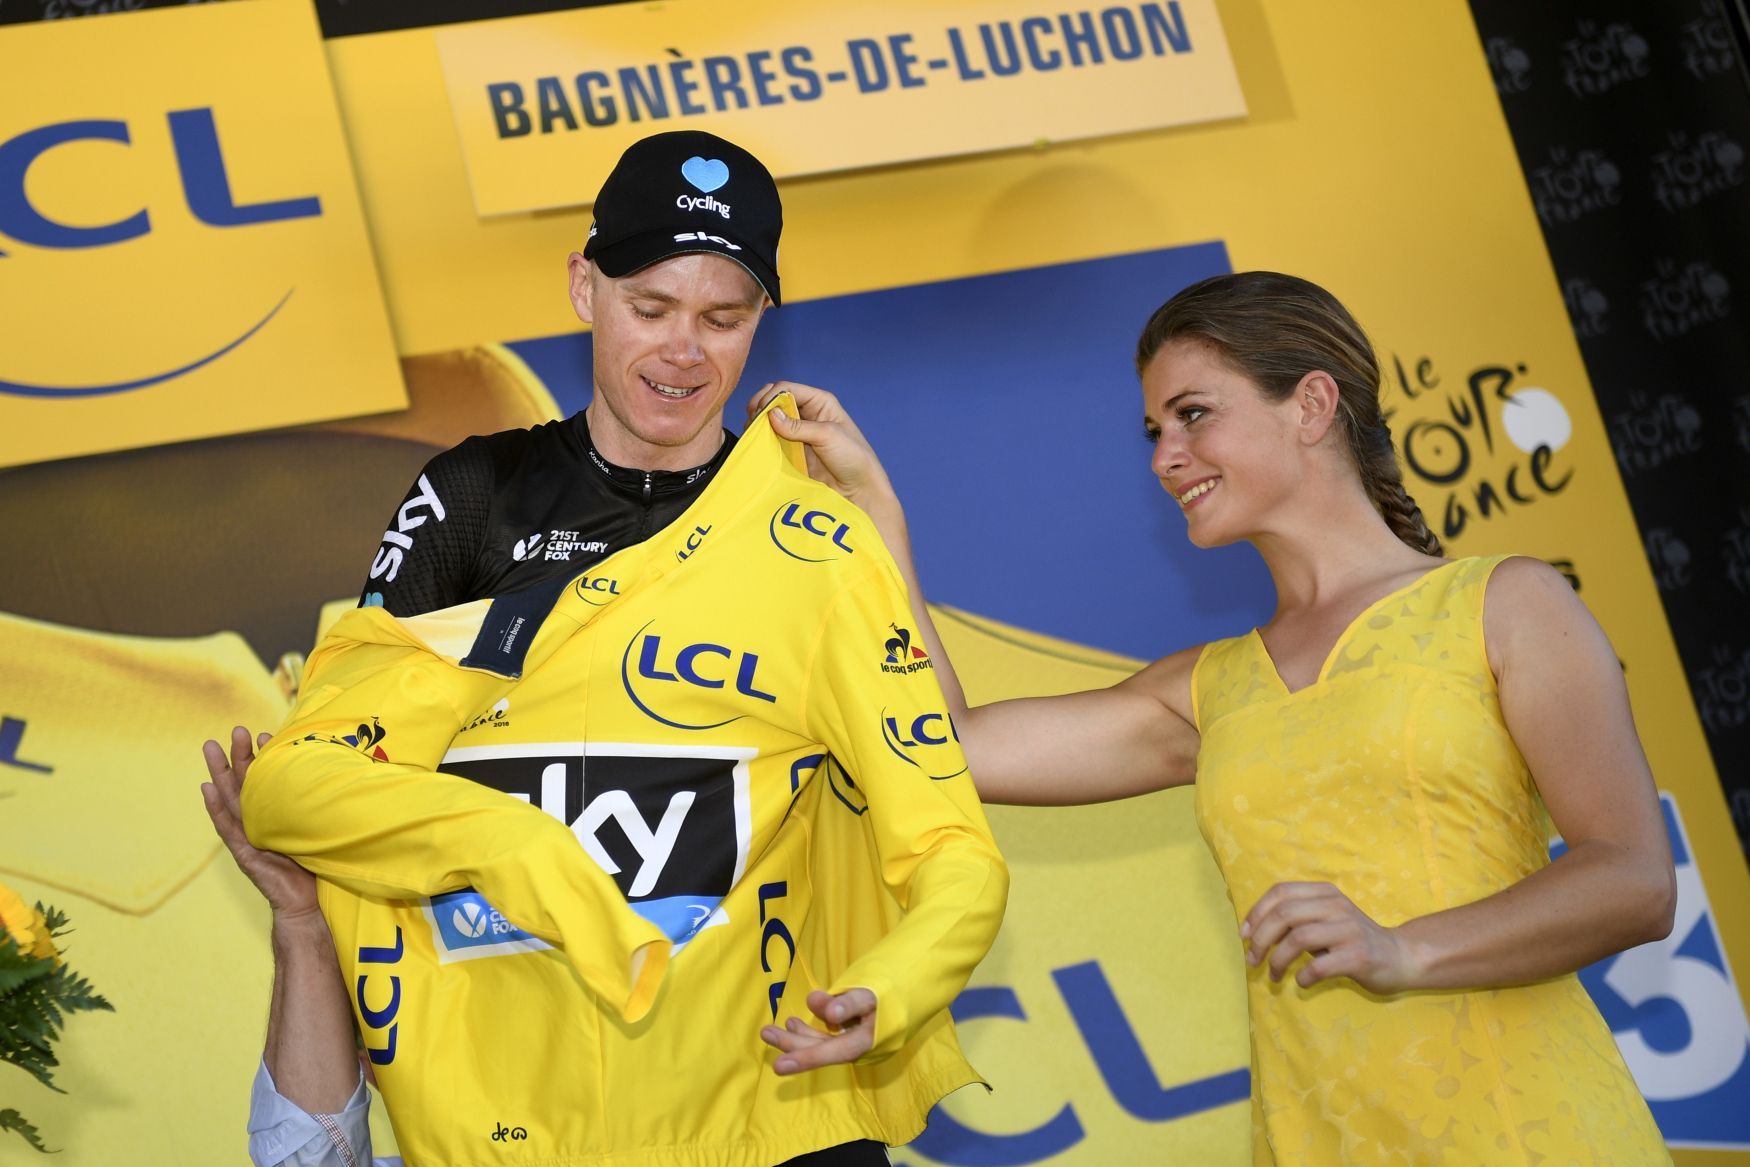 Chris Froome, žlutý trikot, Tour de France 2016